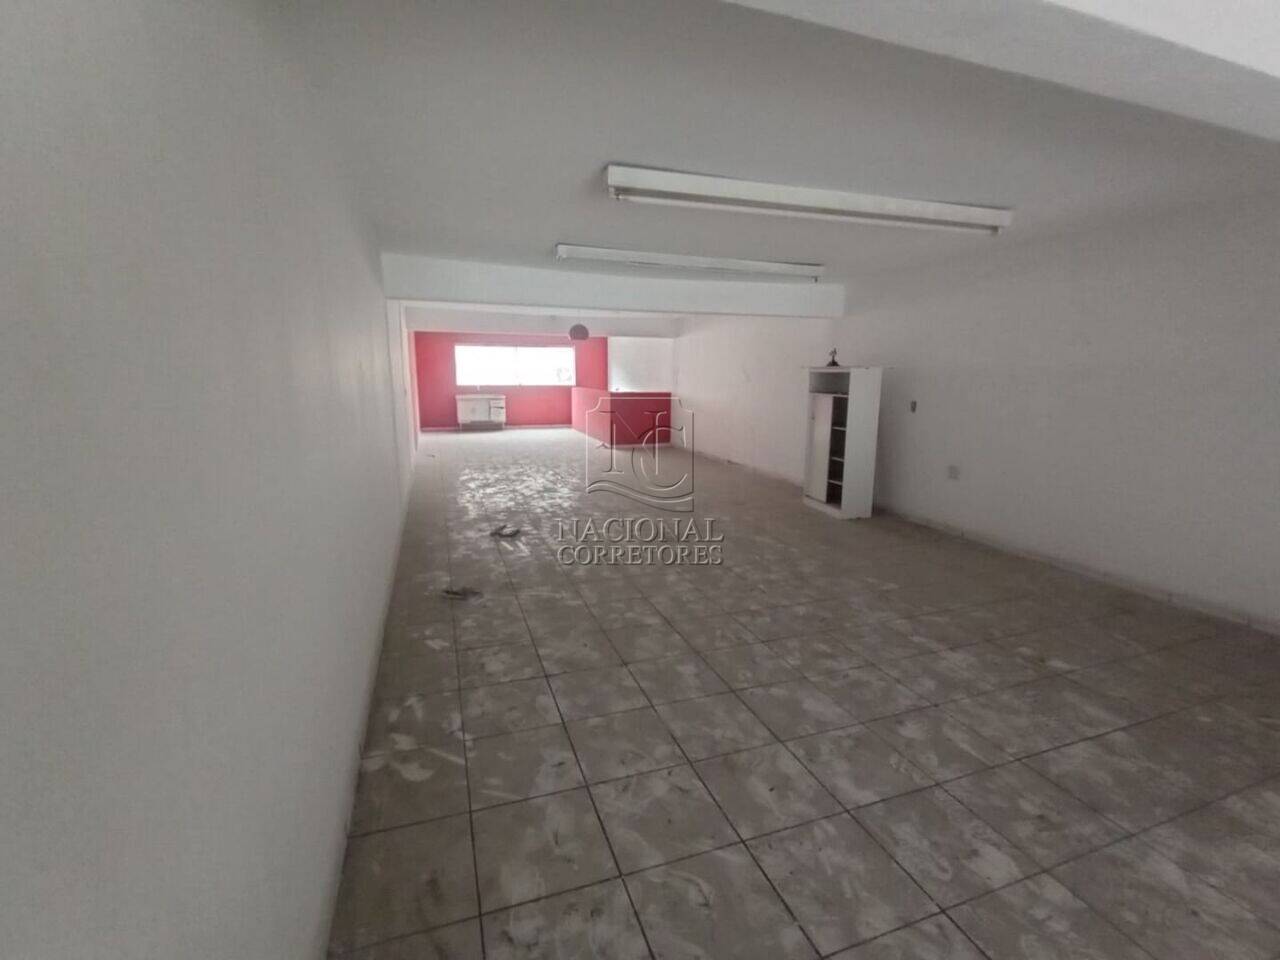 Salão Centro, São Caetano do Sul - SP